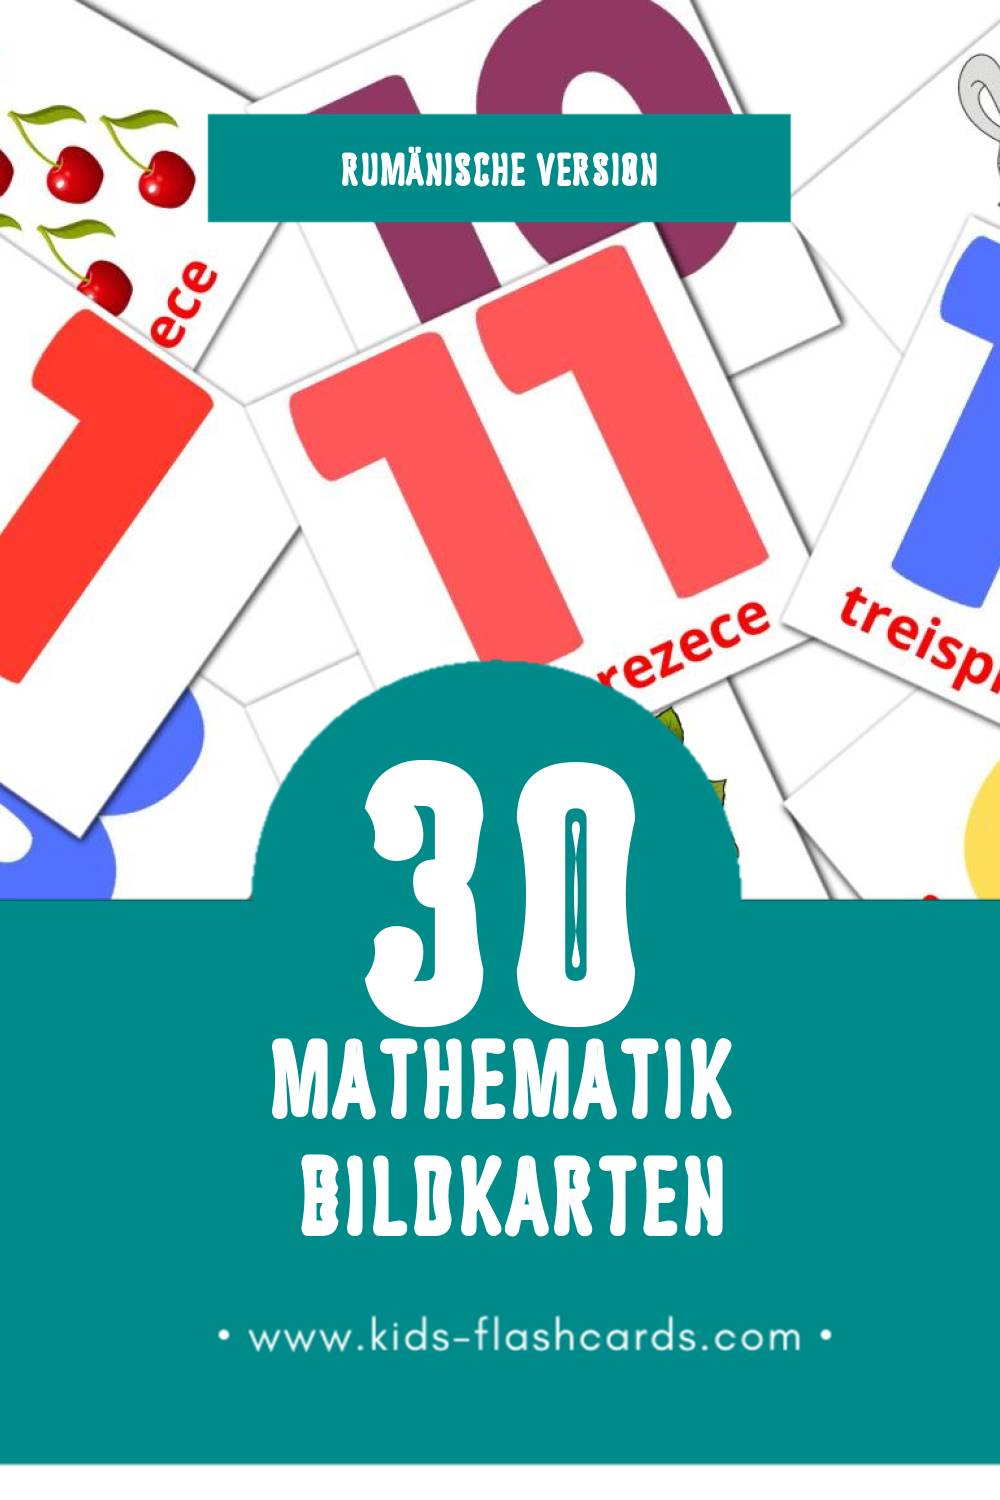 Visual Matematică Flashcards für Kleinkinder (30 Karten in Rumänisch)